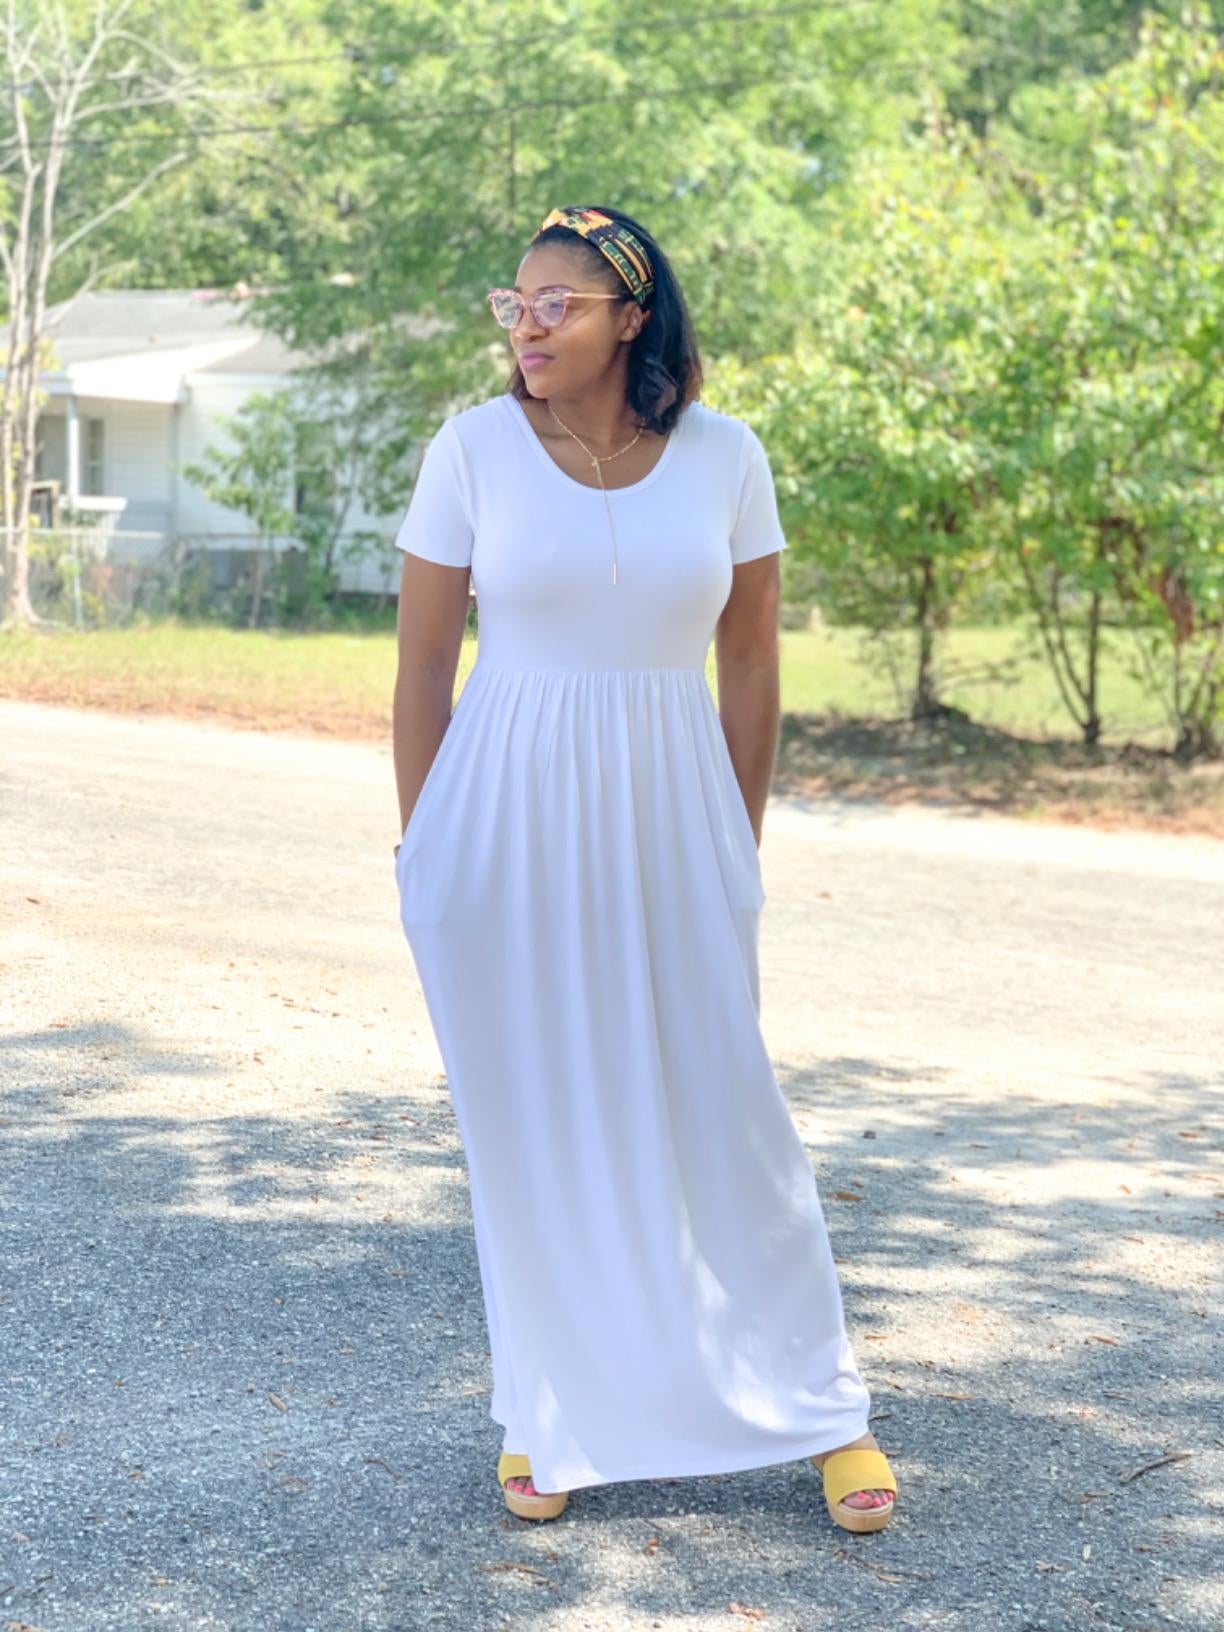 The Best White Dresses for Summer